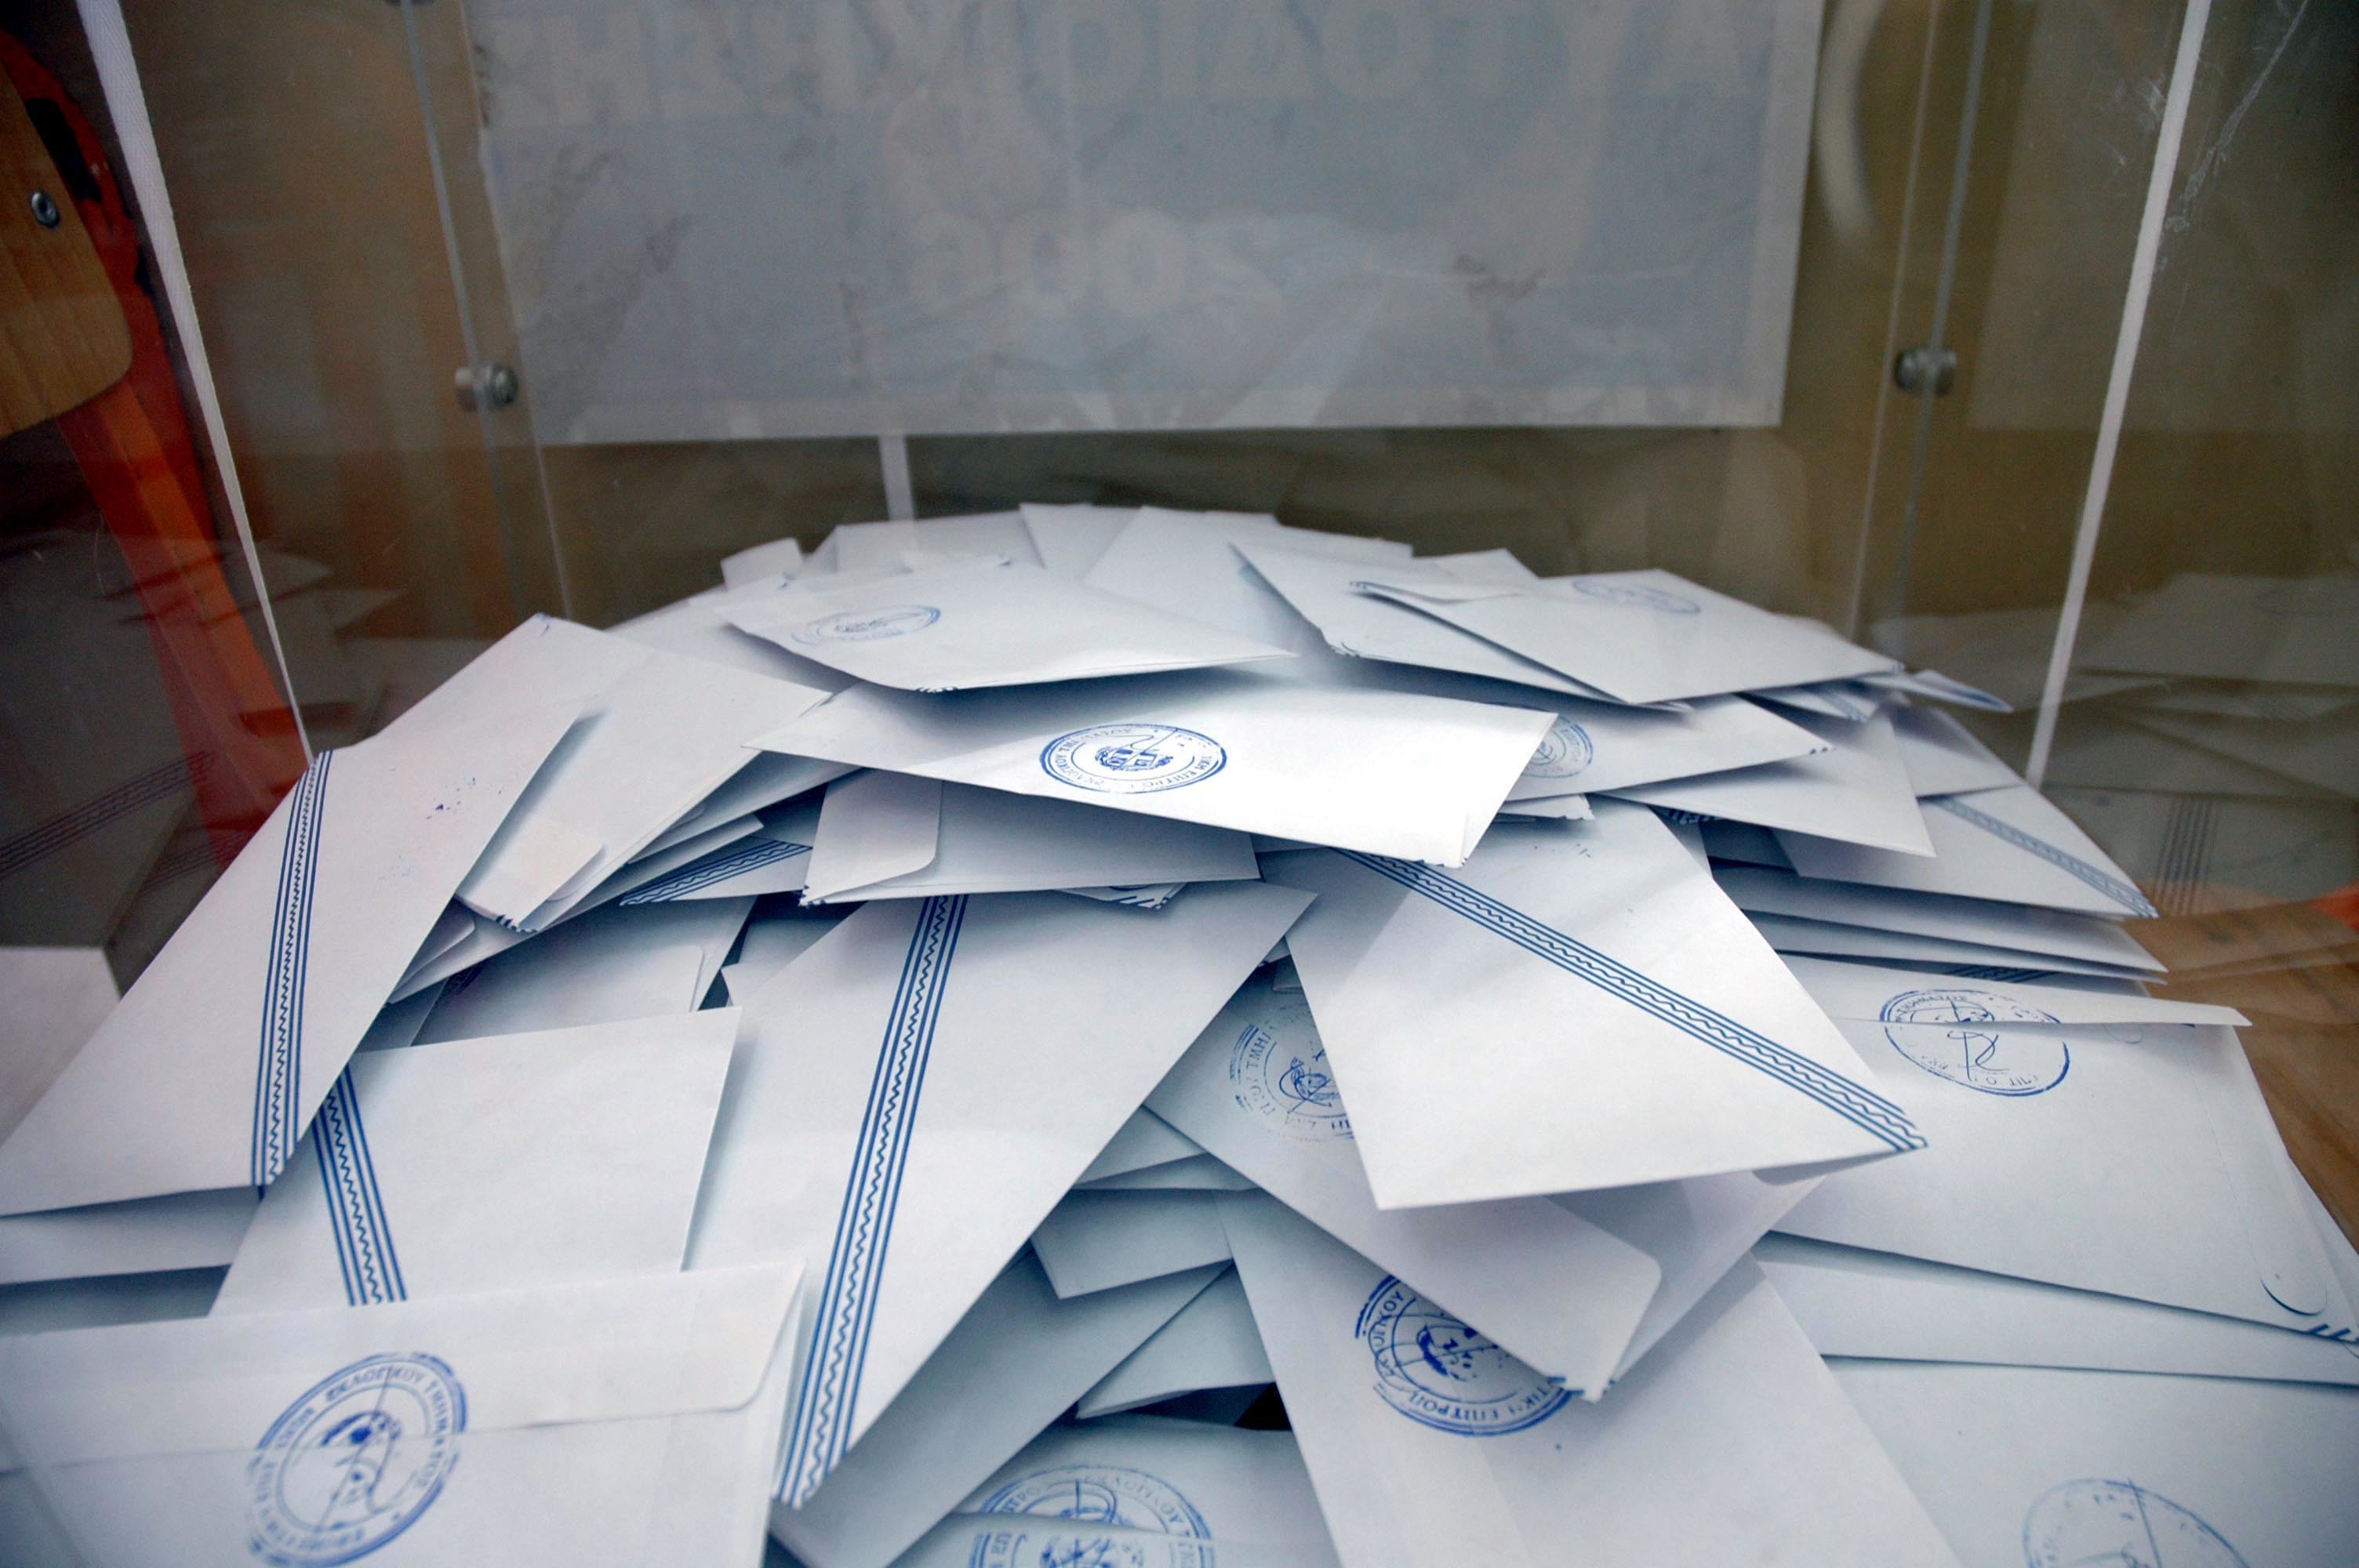 Σε ποιούς δήμους της Αττικής πρέπει να γίνουν ξανά εκλογές